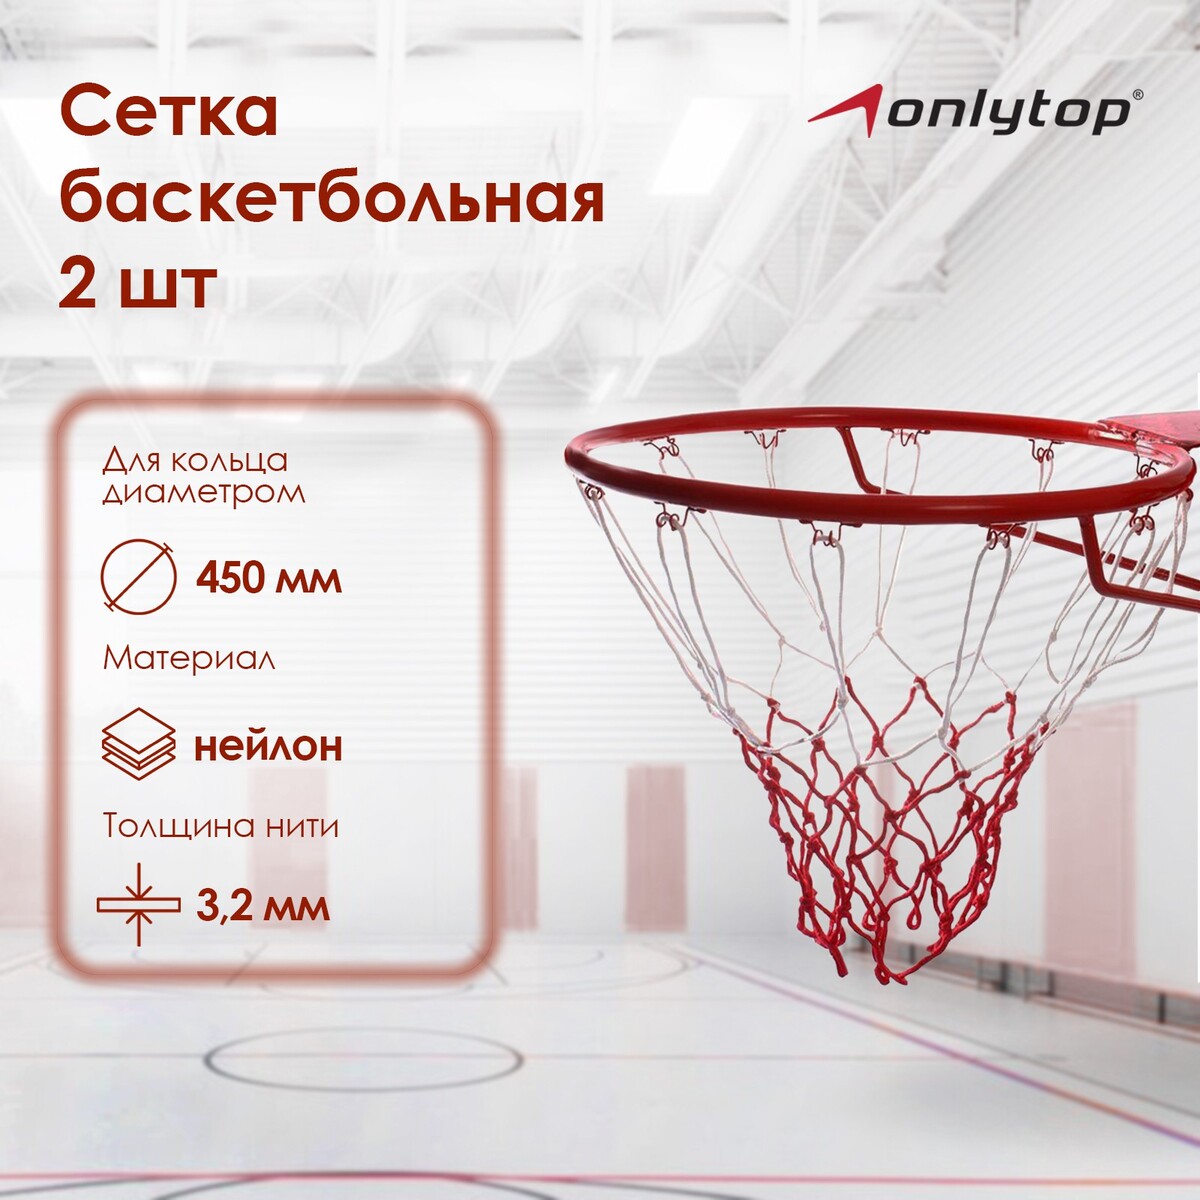 Сетка баскетбольная onlytop, 50 см, нить 3,2 мм, 2 шт. сетка для настольного тенниса onlytop 184х14 см с крепежом